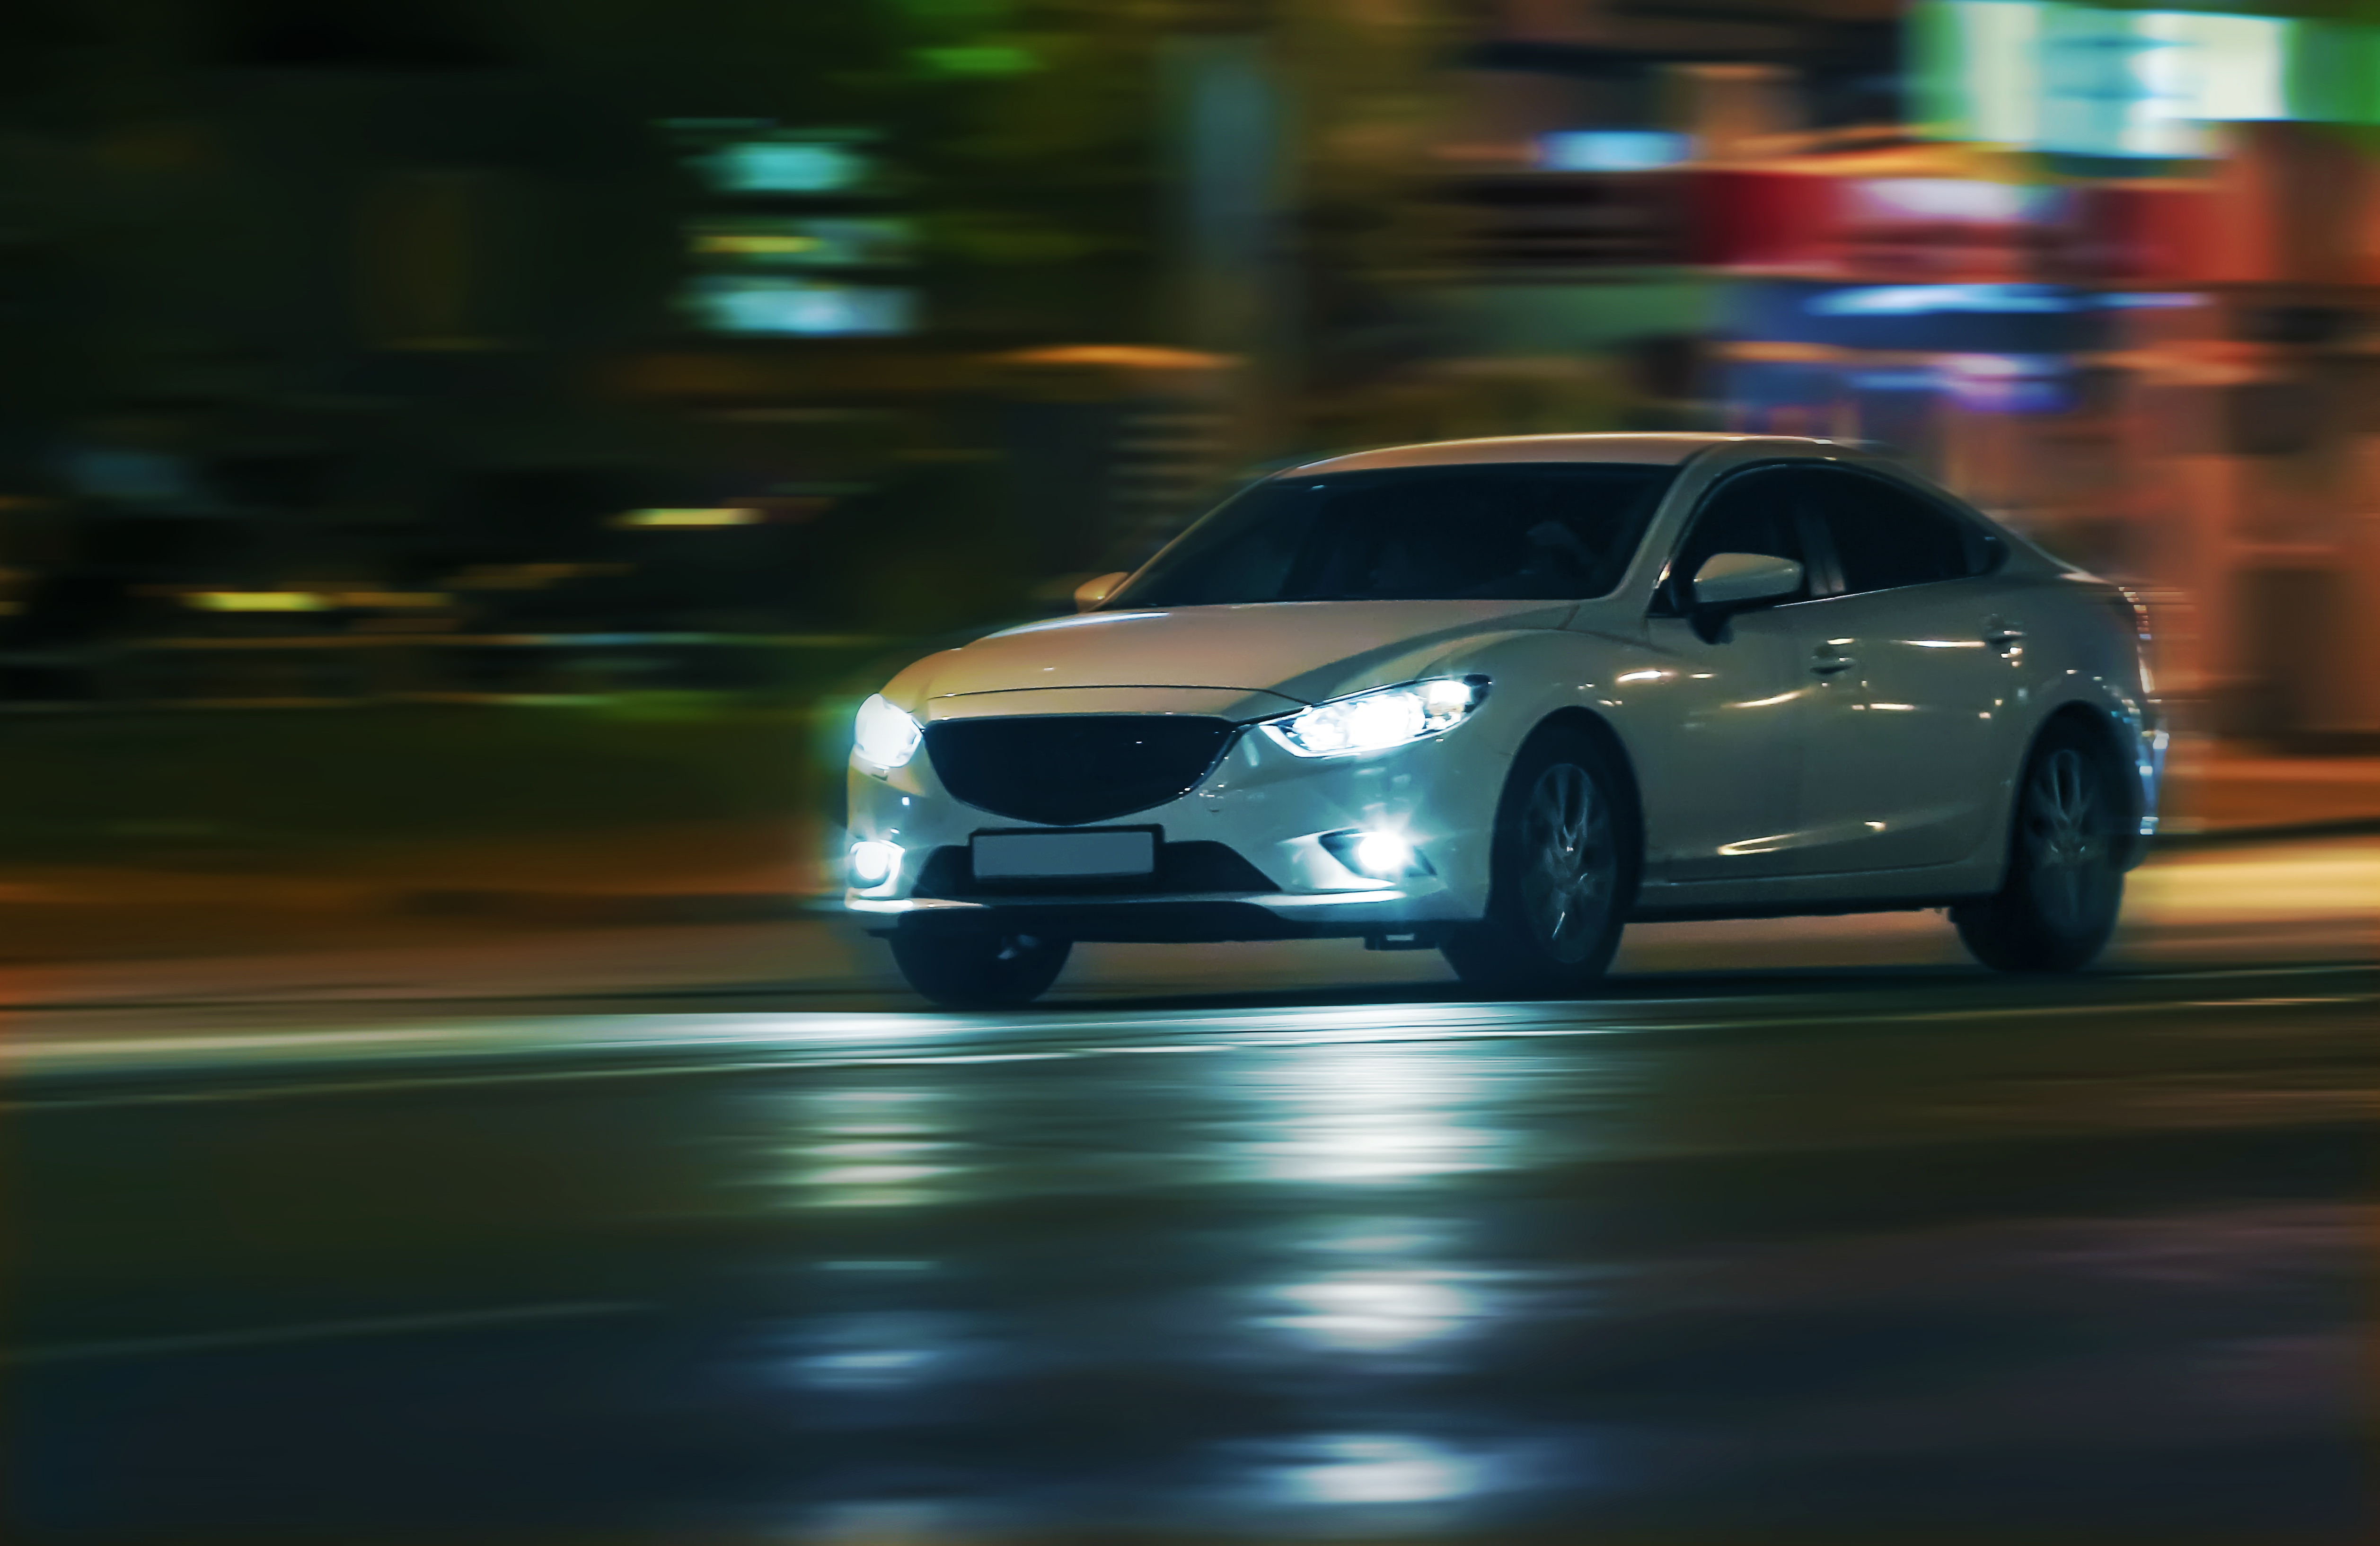 Automóvil en carretera de noche. | Fuente: Shutterstock